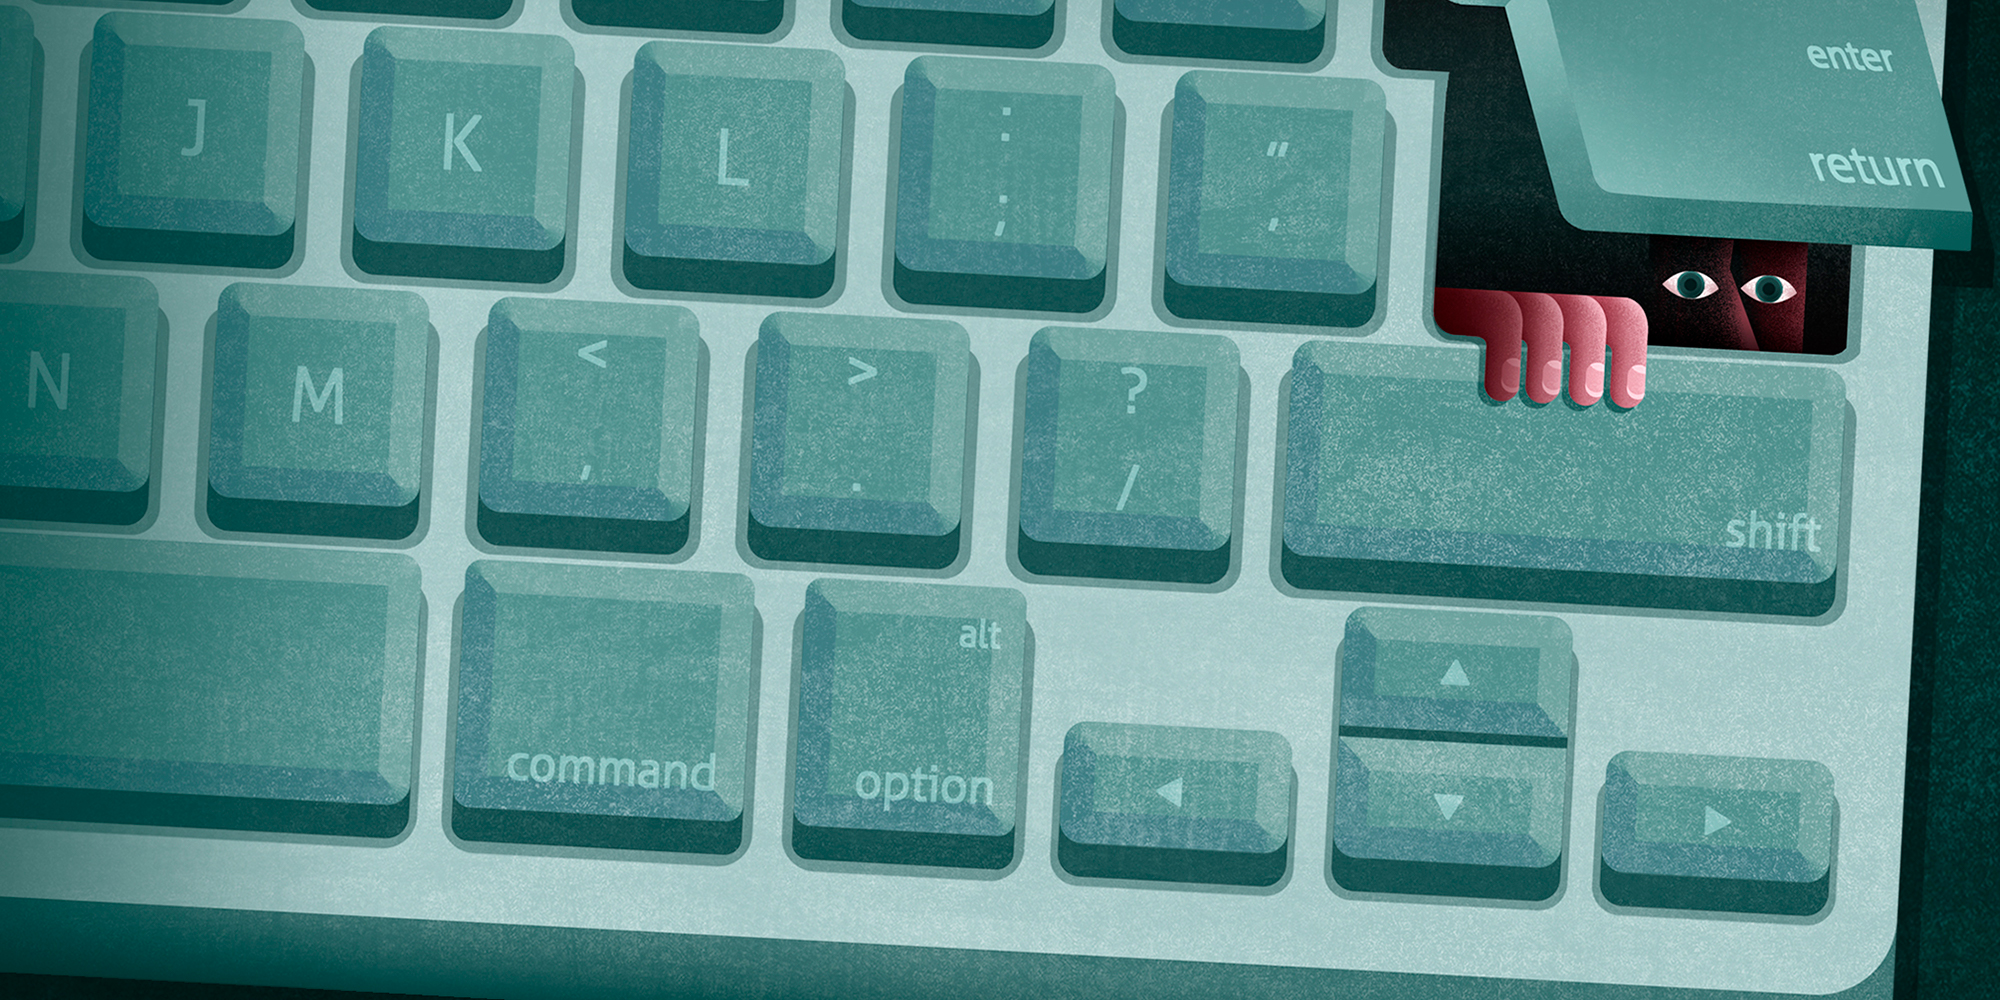 Spy inside a keyboard.